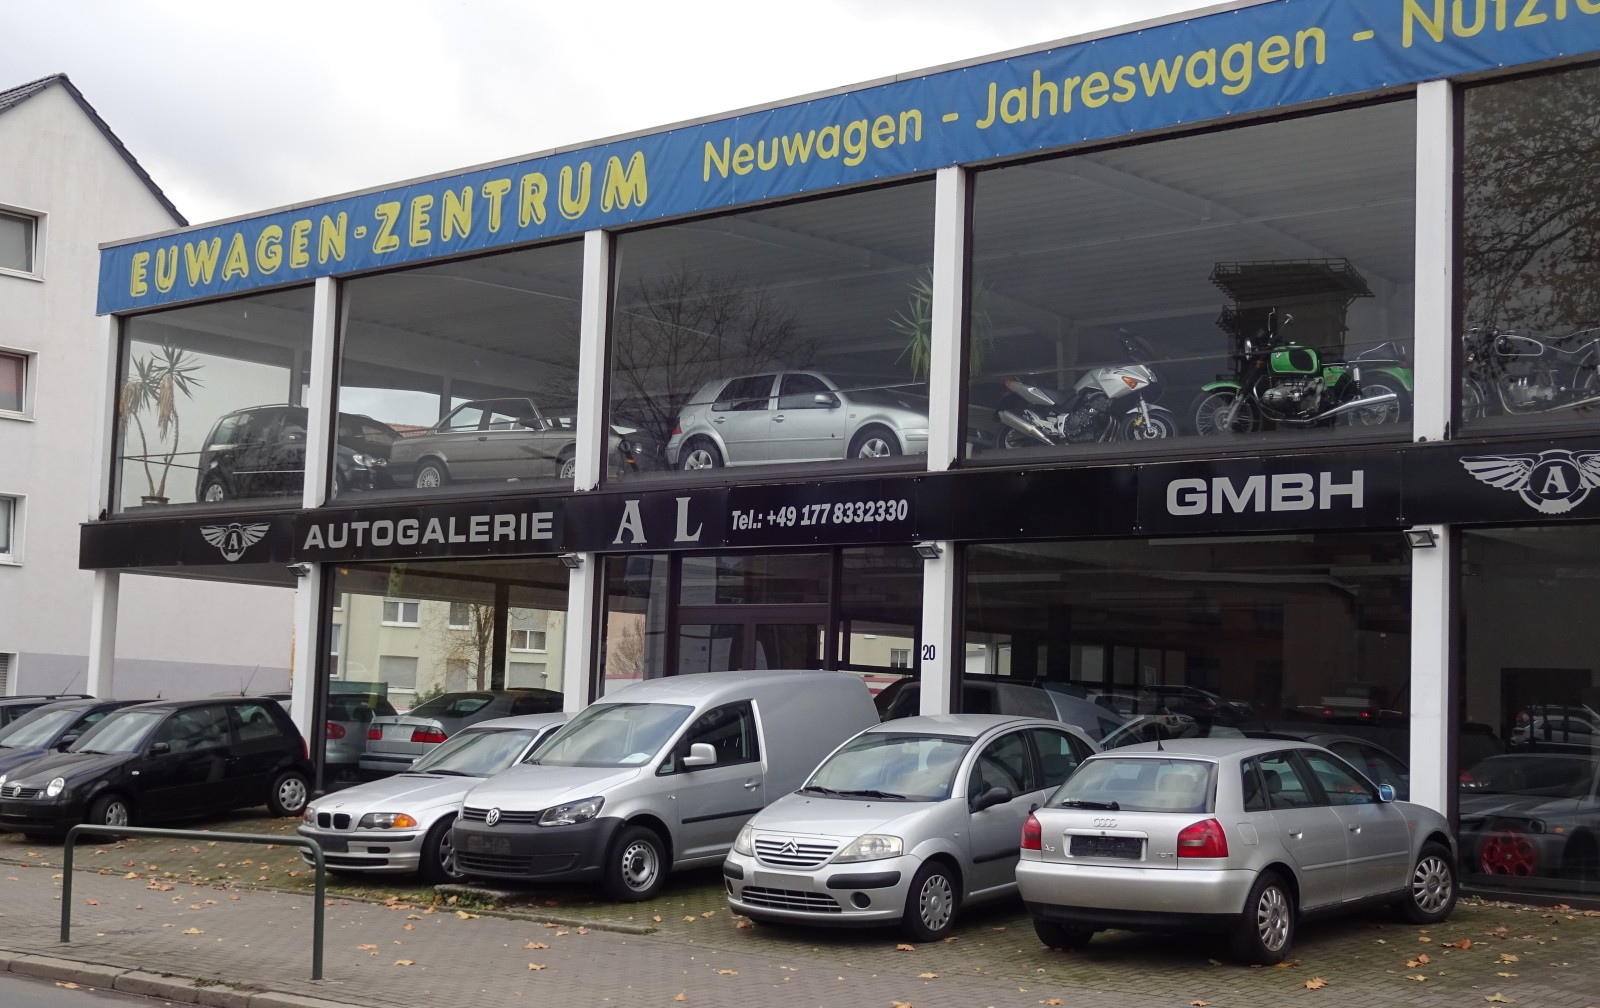 Продажа подержанных автомобилей в Германии